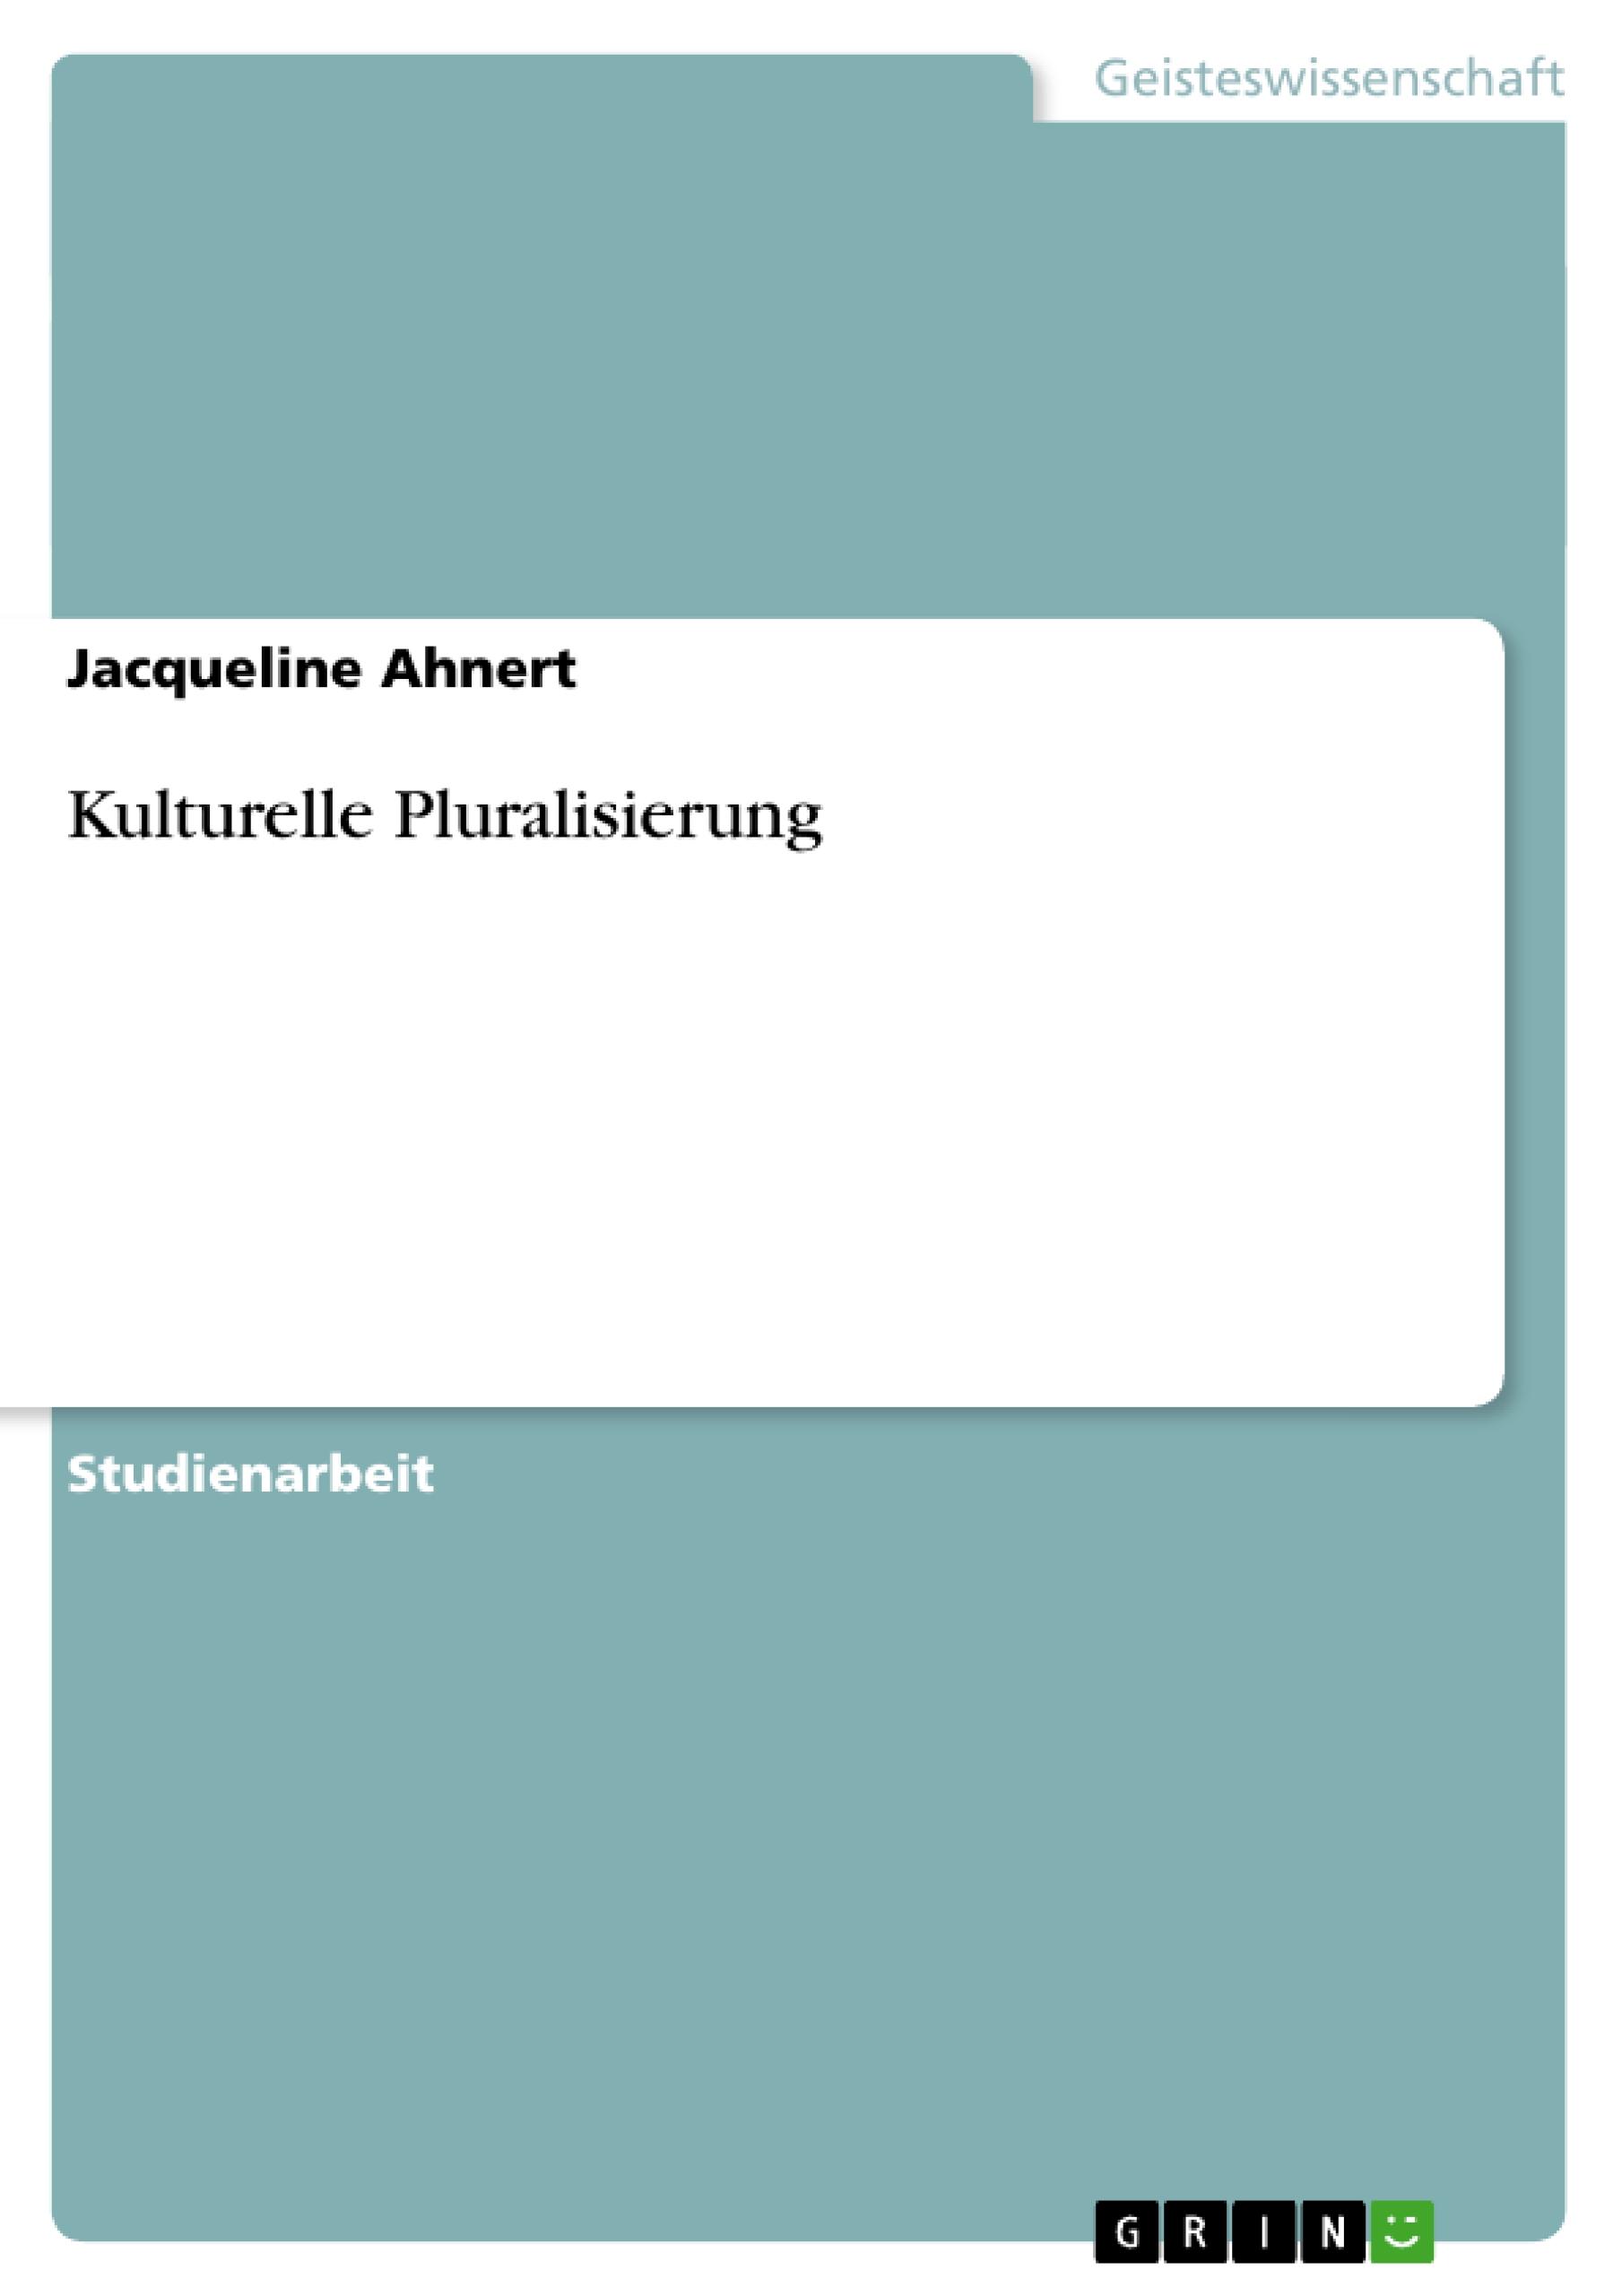 Kulturelle Pluralisierung  Jacqueline Ahnert  Taschenbuch  Akademische Schriftenreihe Bd. V30732  Paperback  Deutsch  2011  GRIN Verlag  EAN 9783656071679 - Ahnert, Jacqueline